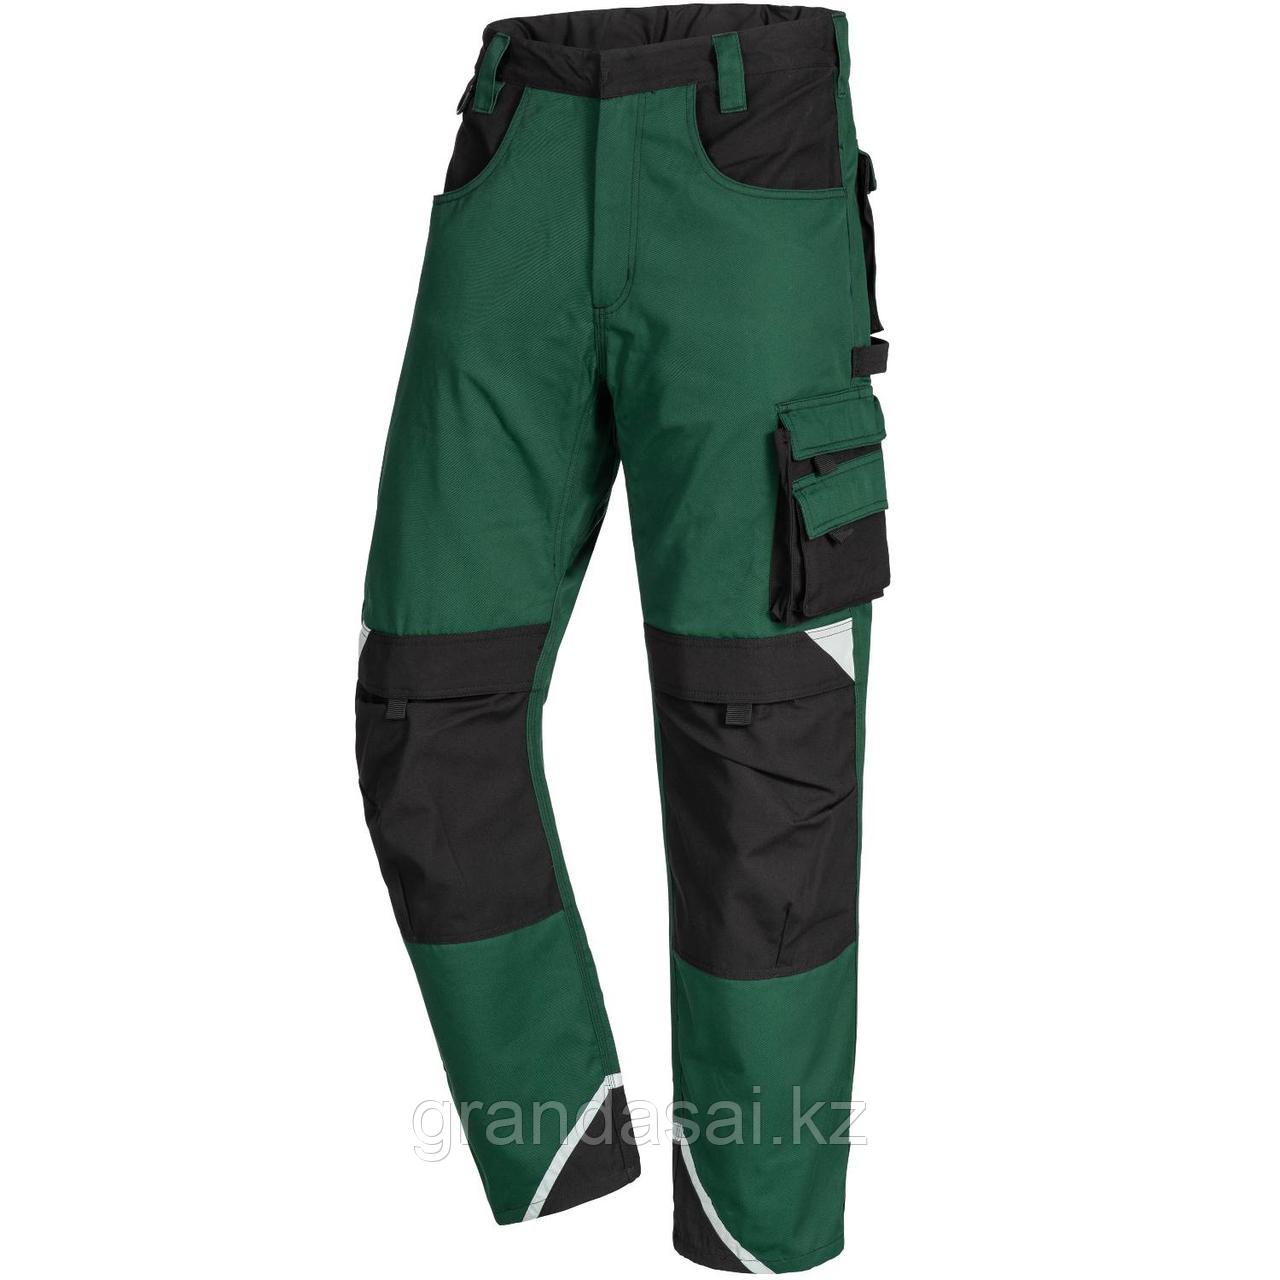 NITRAS 7614, рабочие брюки, цвет зеленый/черный